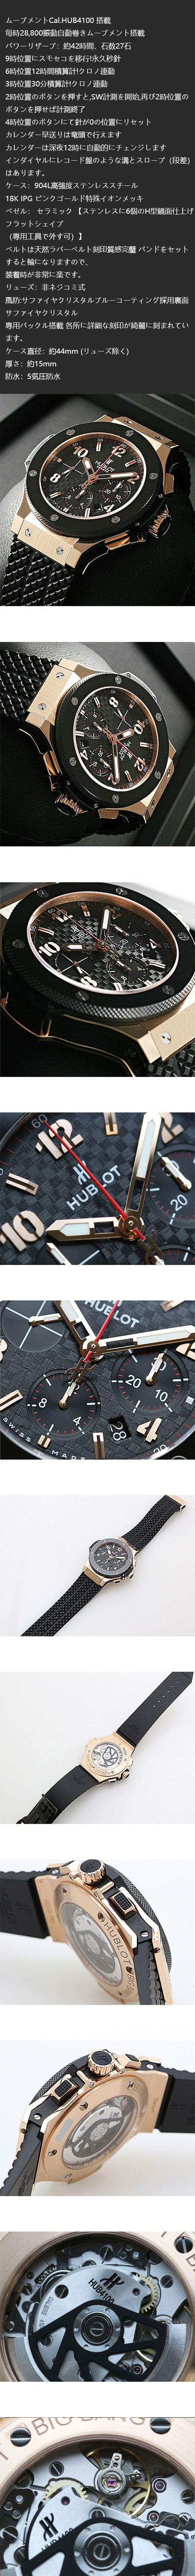 【安心購入】ウブロ ビッグバン ゴールド セラミック 301.PB.131.RXスーパーコピー時計